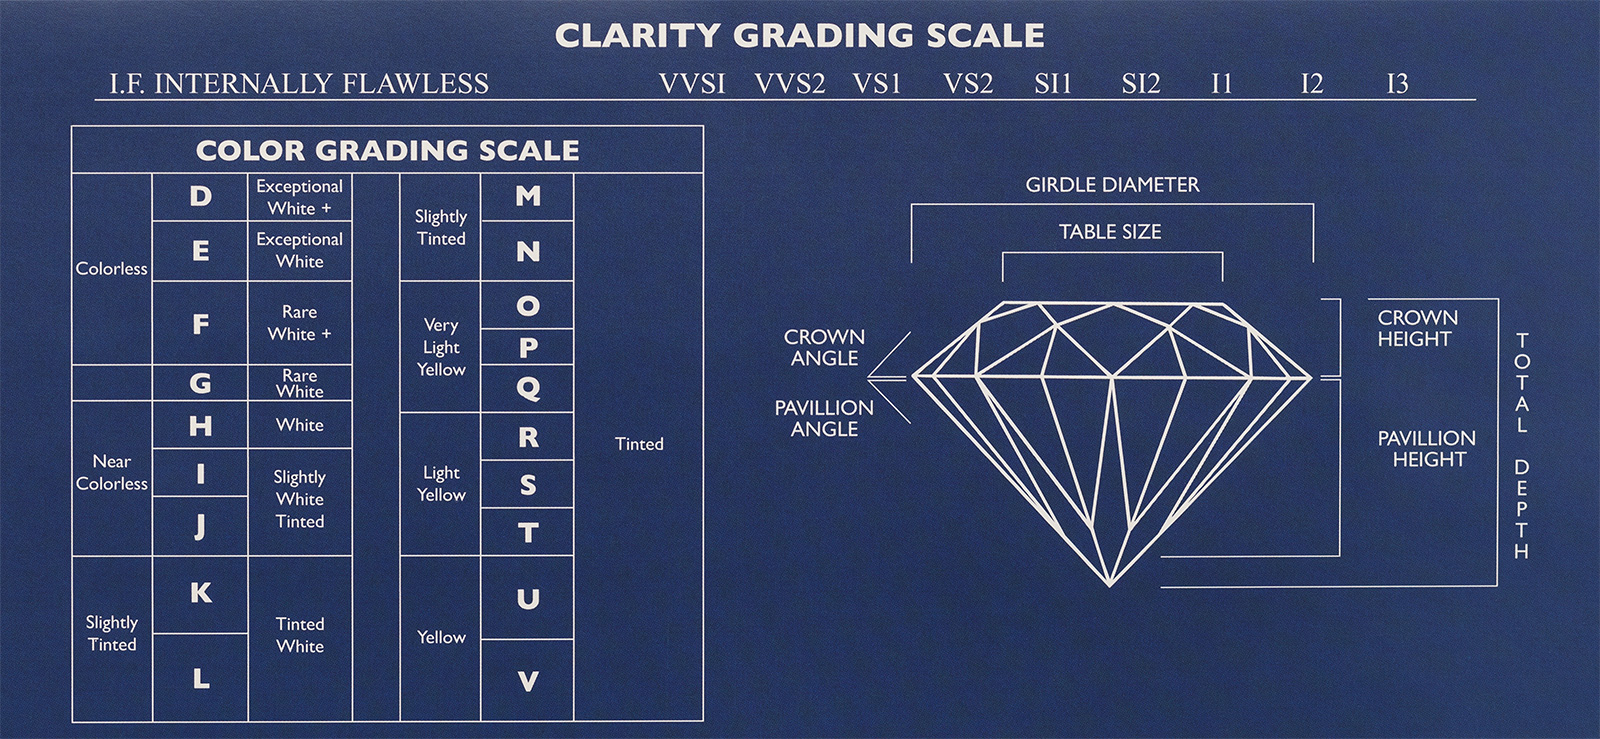 GIA Diamond Grading Scales: The Universal Measure of Quality - GIA 4Cs